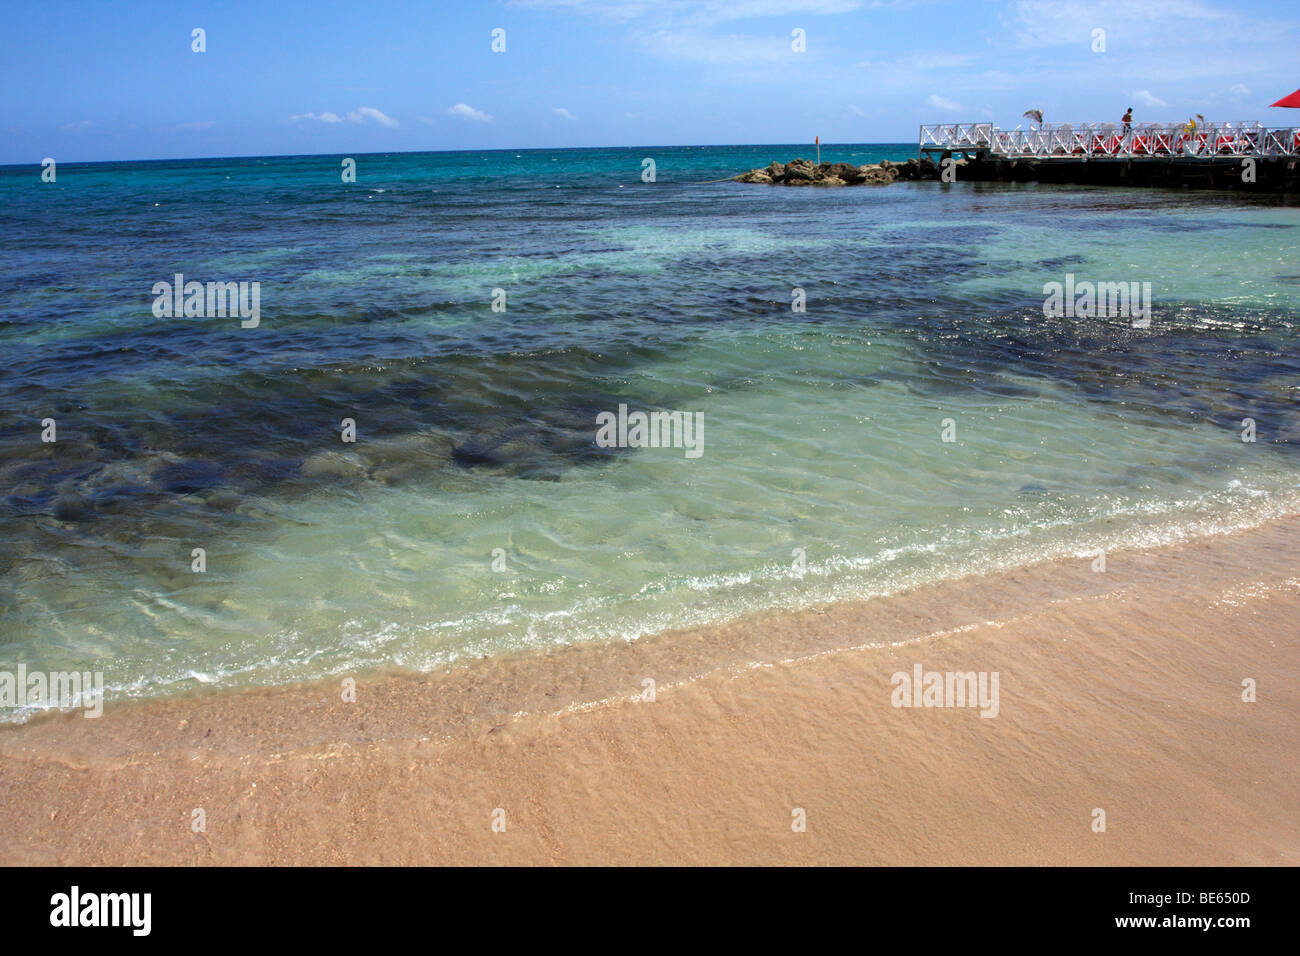 Playa y muelle, playa y a través de las claras aguas del Caribe las algas y rocas. Foto de stock